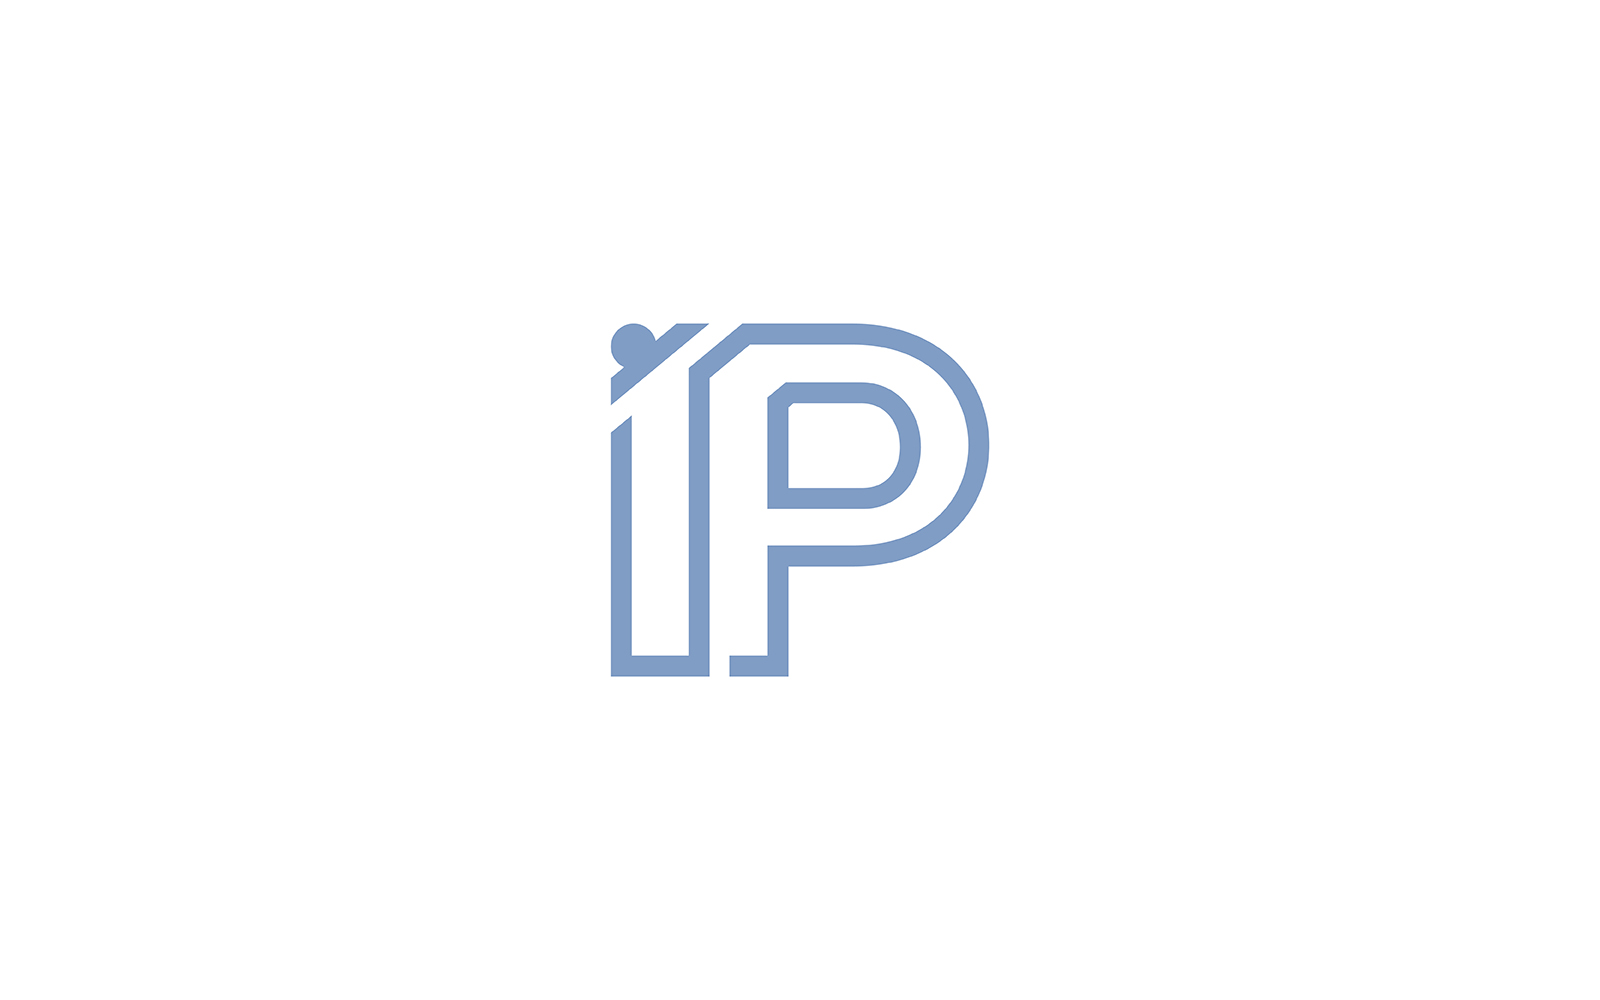 Ip letter logo or p letter logo, pi logo design